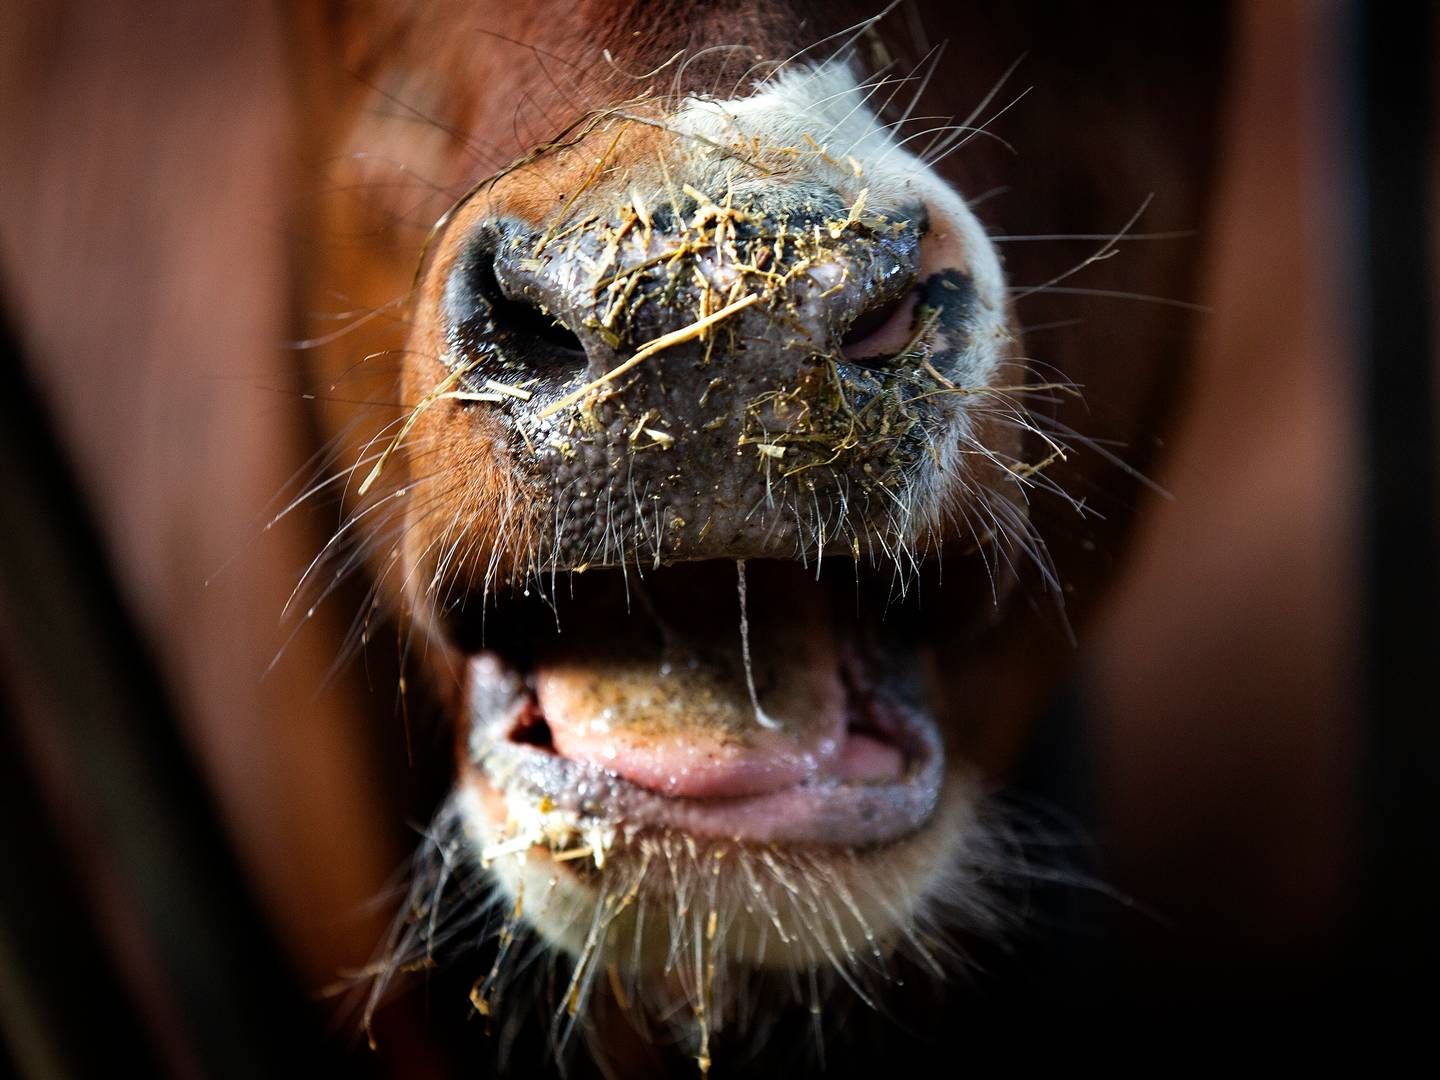 Misrøgt af bl.a. en ko har nu ført til en dom af landmand. | Foto: Finn Frandsen/Ritzau Scanpix